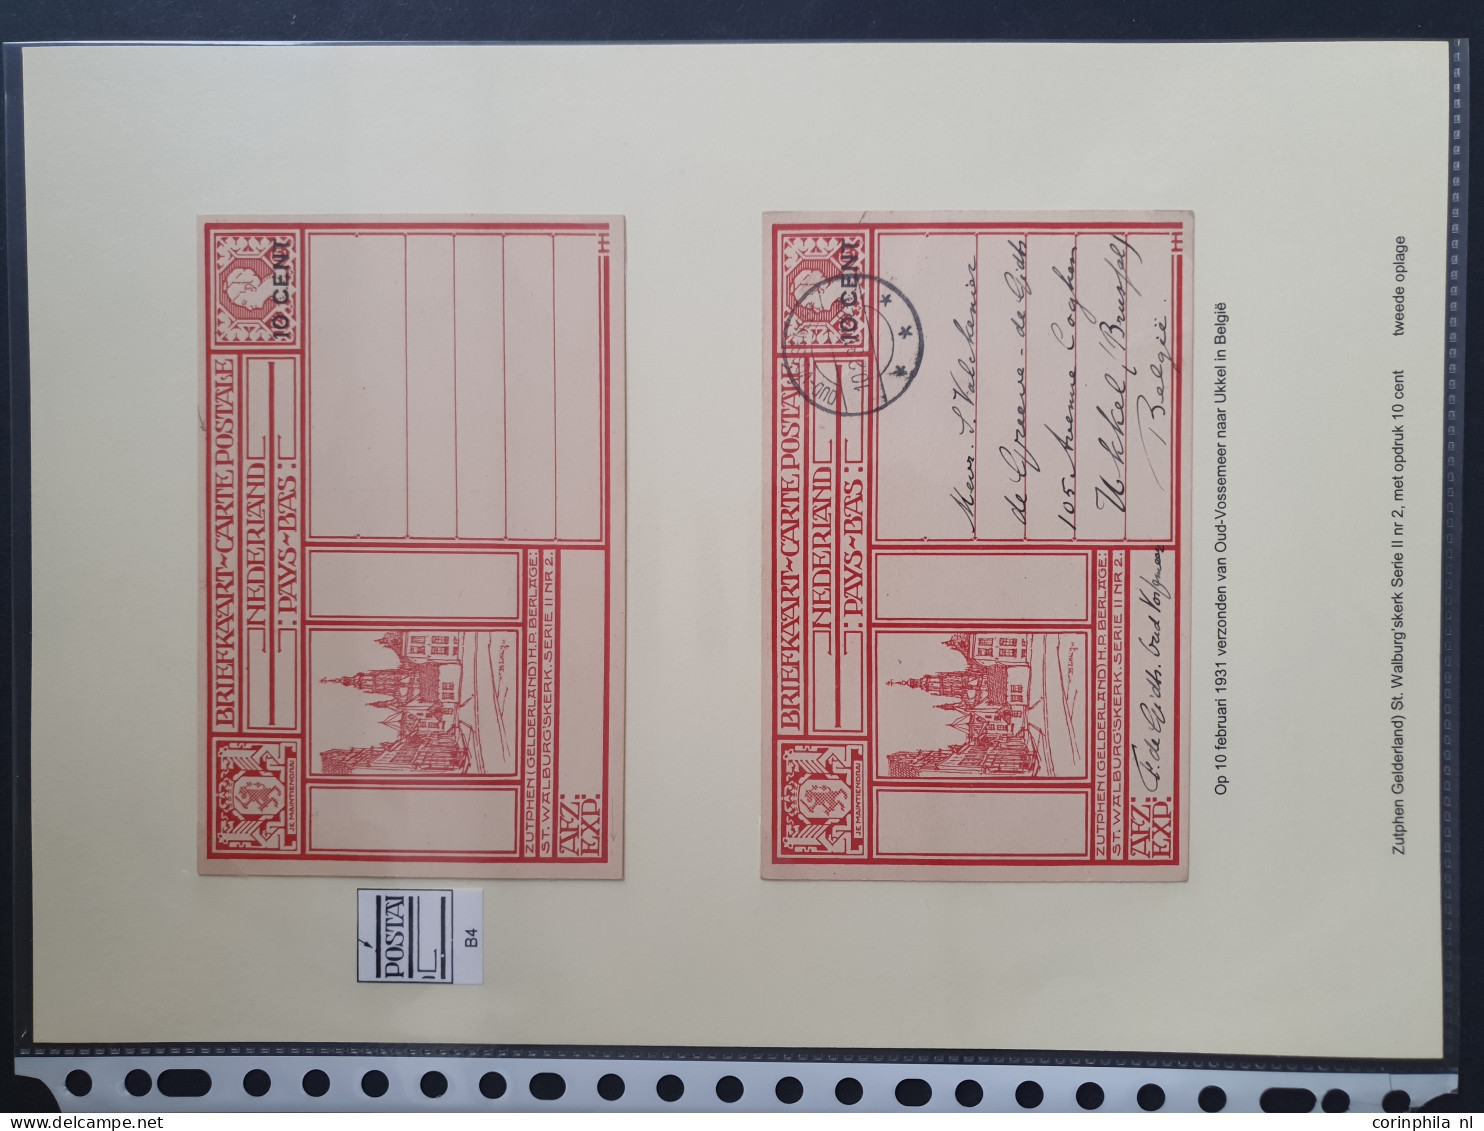 Cover 1924-1926 zeer gespecialiseerde collectie geïllustreerde briefkaarten zowel ongebruikt opgezet op series (199 en 2